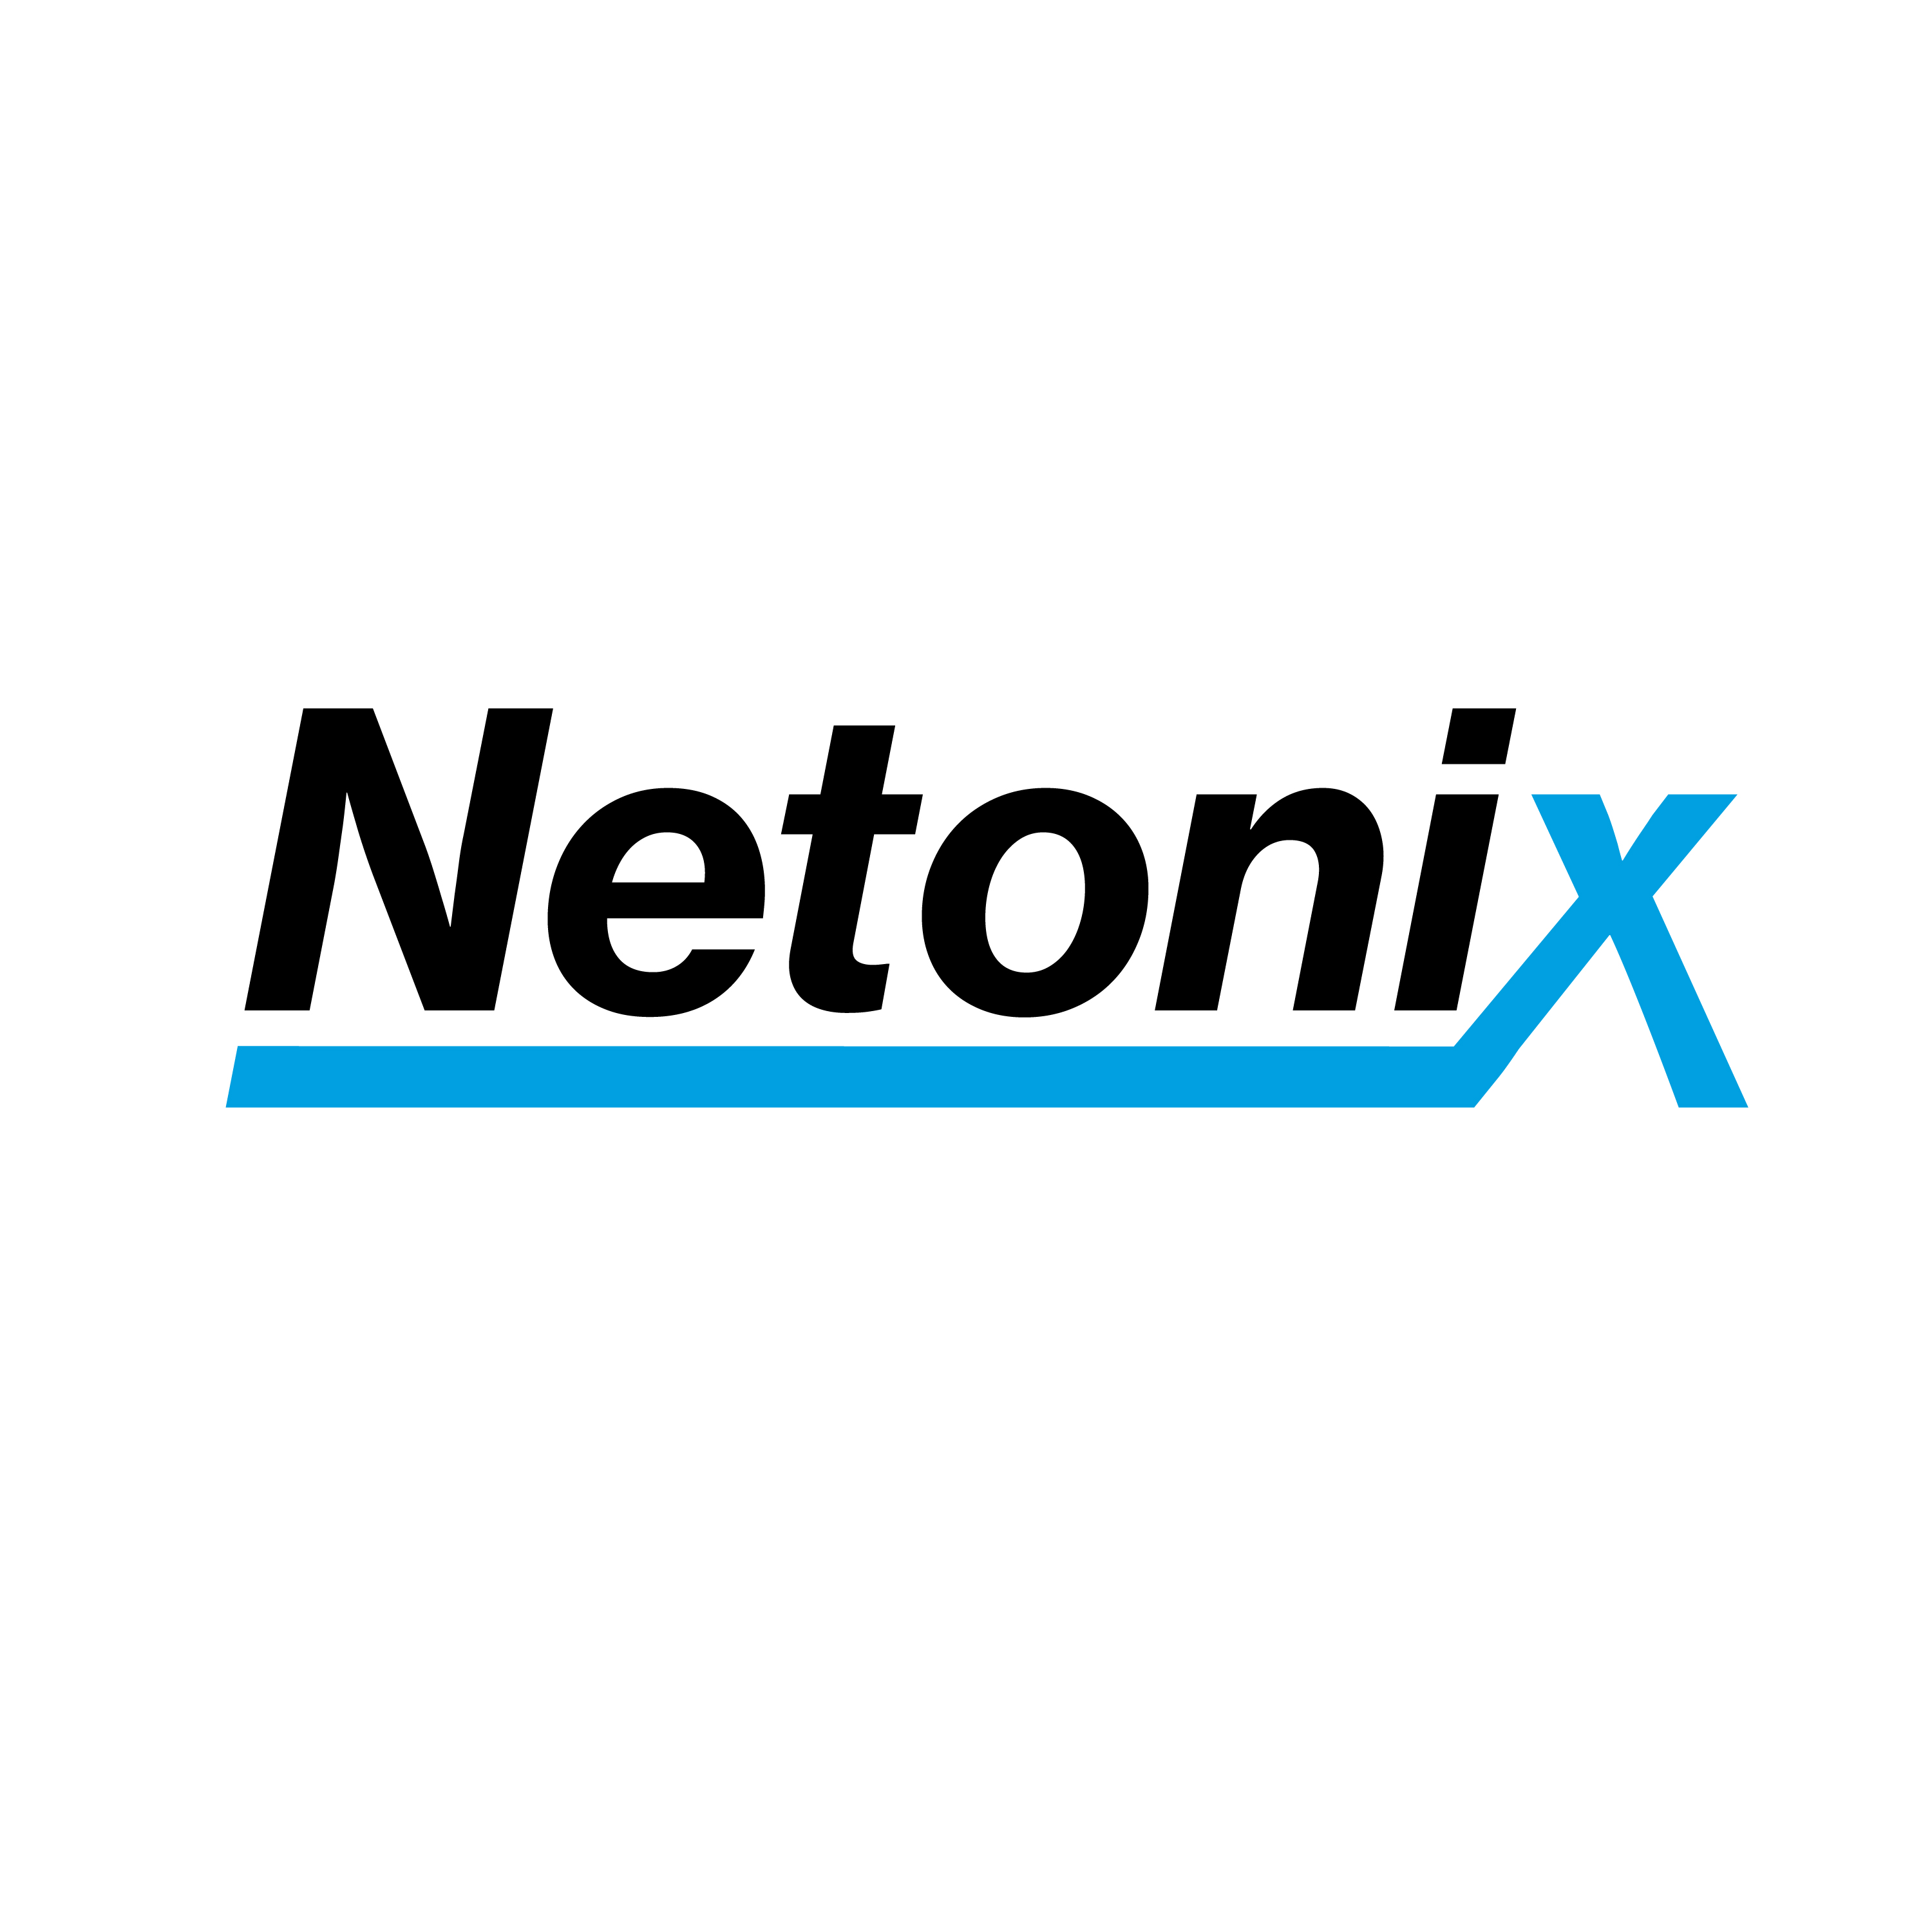 Netonix